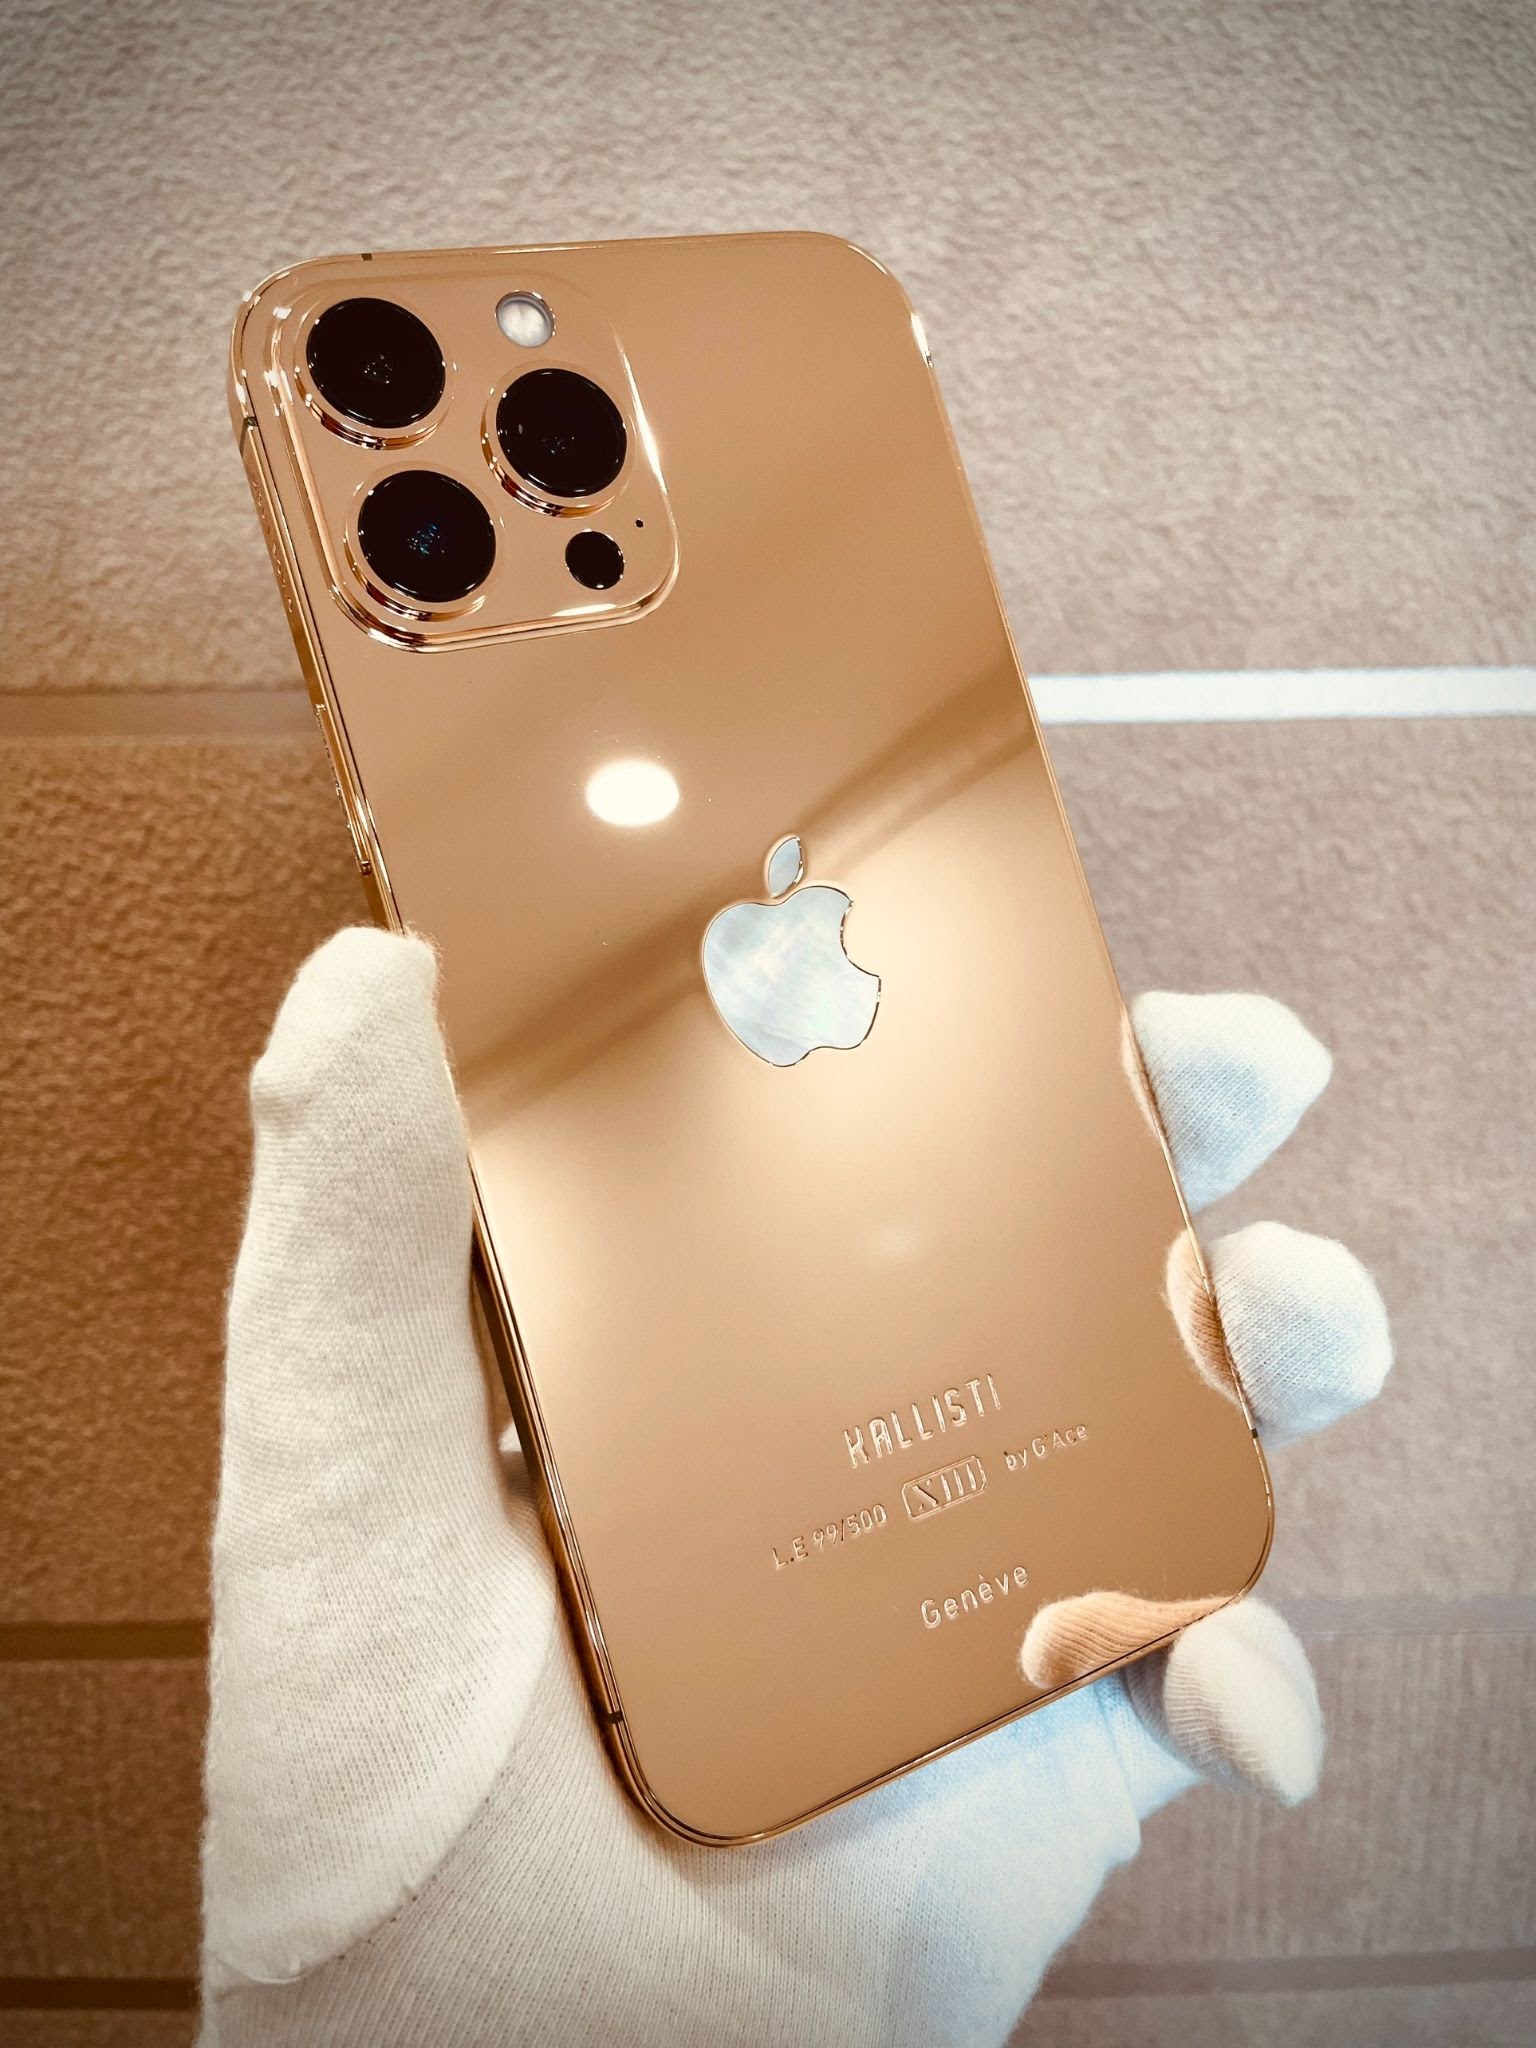 iPhone 13 Pro Max mạ vàng và kim cương - Chúng tôi sẽ đưa bạn đến một thế giới của sự xa xỉ và sang trọng với chiếc iPhone 13 Pro Max mạ vàng và kim cương. Hình ảnh sẽ mang đến cho bạn một cái nhìn chân thật về sự đẳng cấp vượt trội của chiếc điện thoại này, cùng với sự tinh tế và chi tiết hoàn hảo của việc đính kim cương.